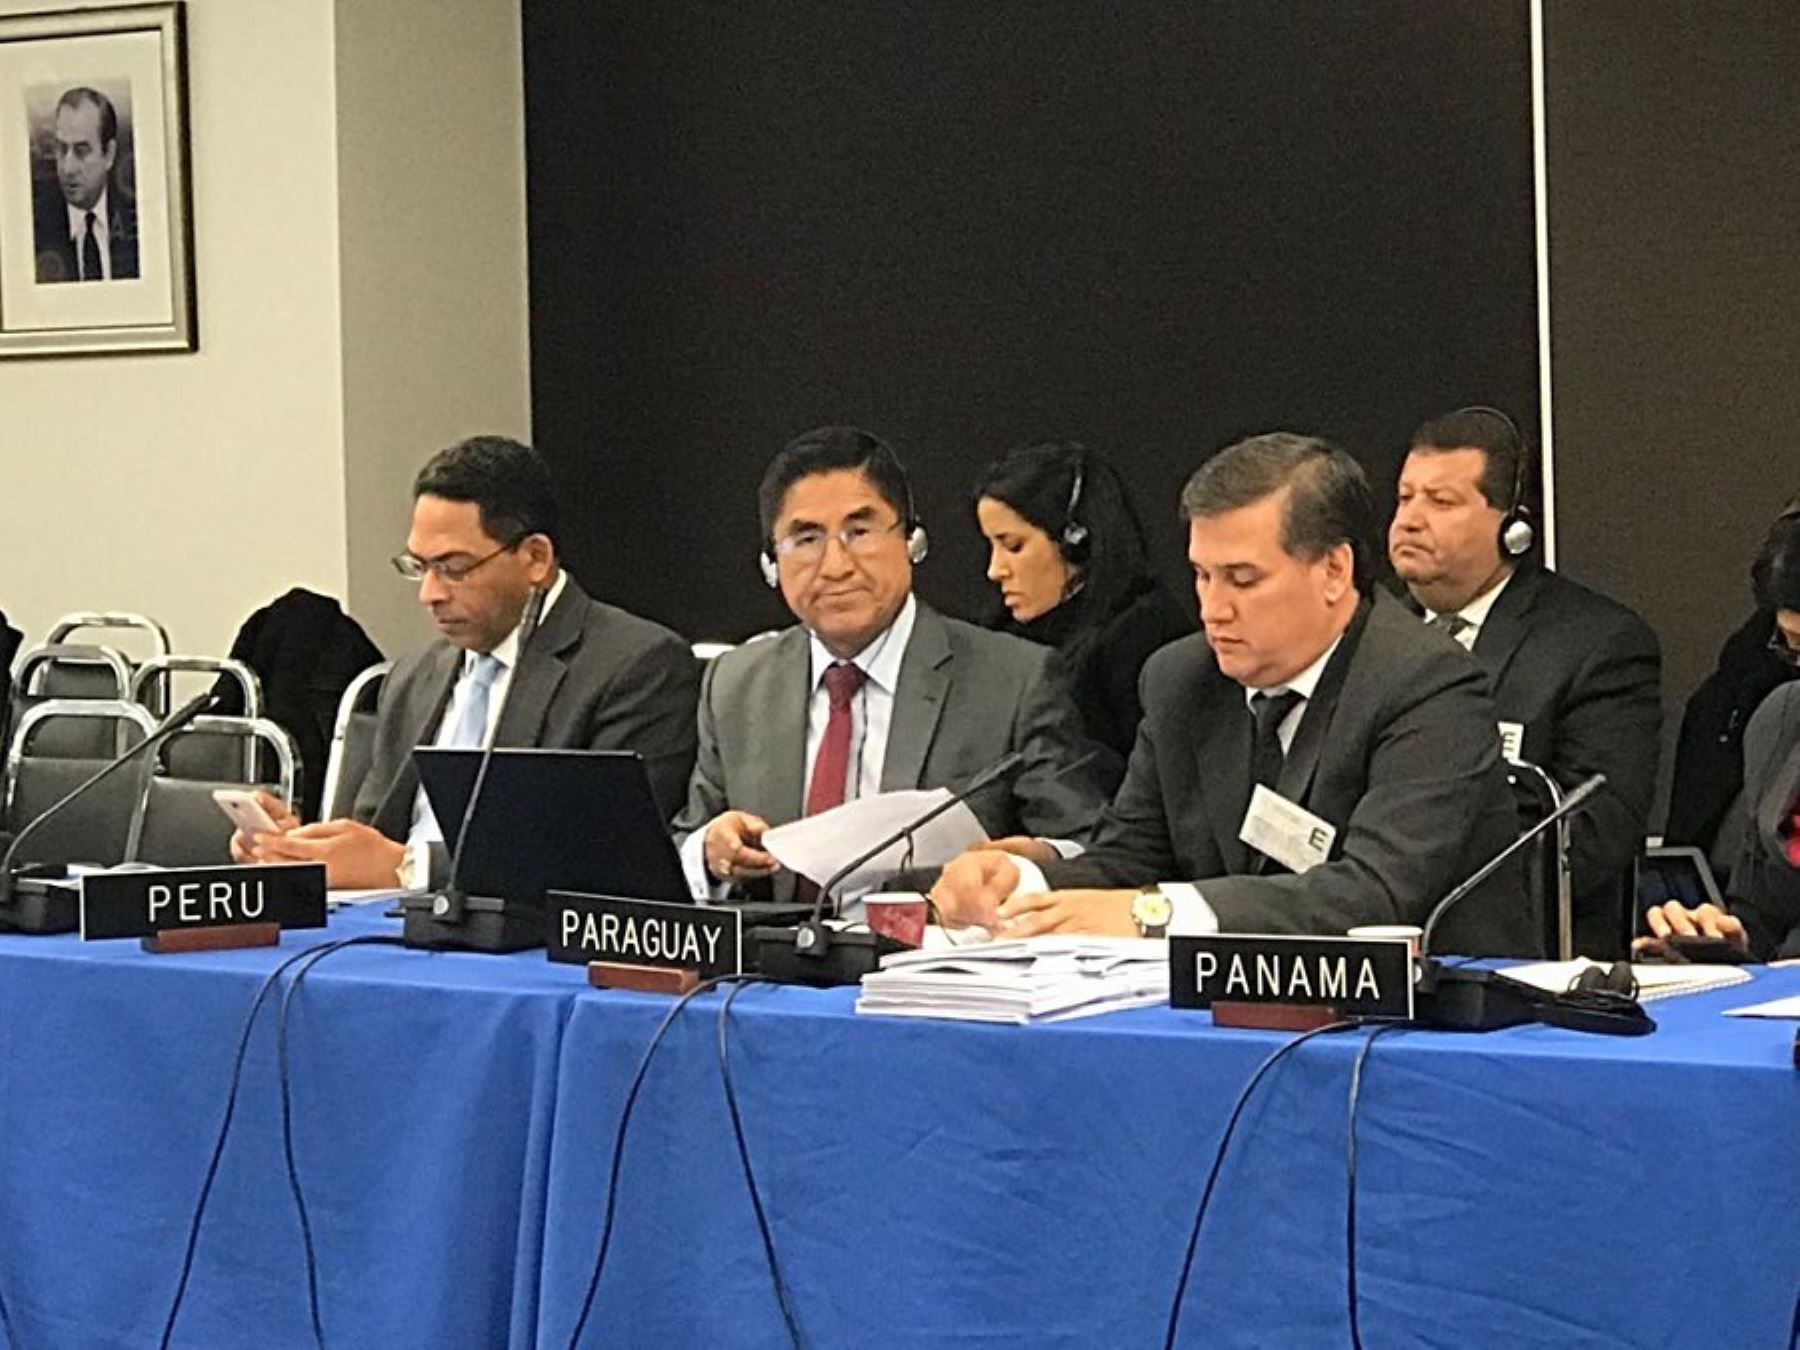 Juez peruano expuso en Estados Unidos avances del Perú en materia anticorrupción